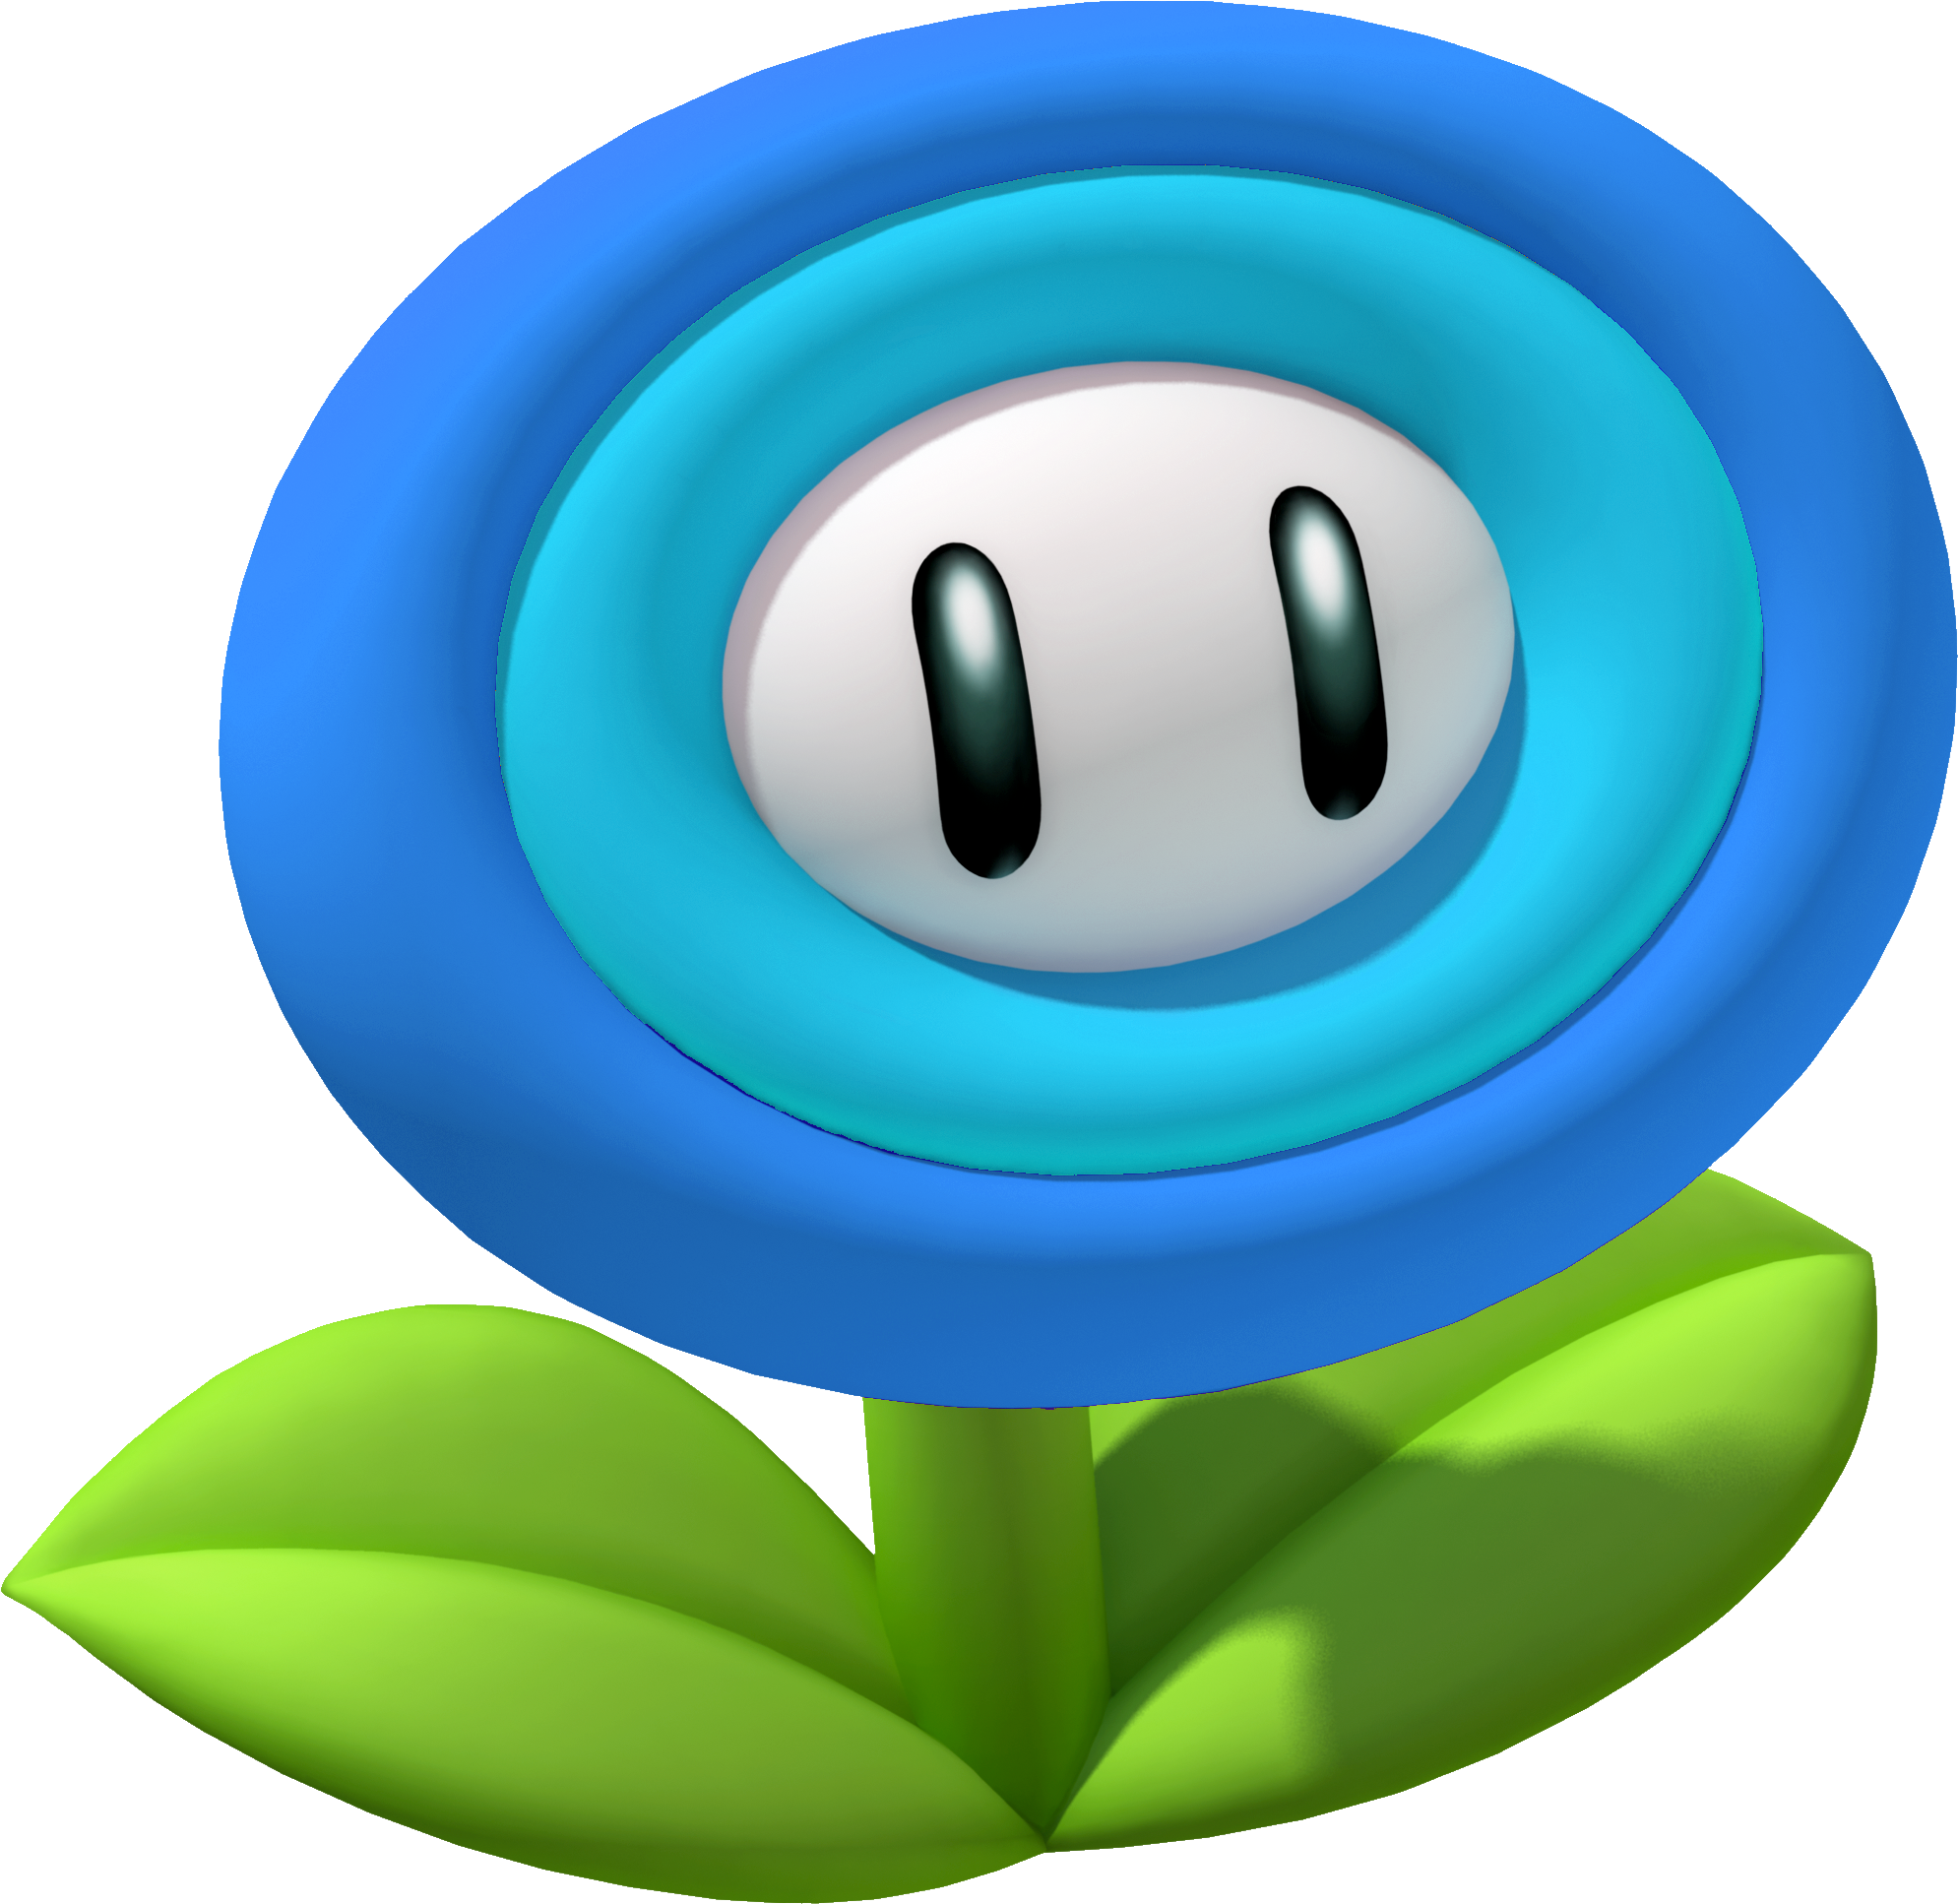 Level 4 Mario Memrise - Ice Flower From Mario (2057x1991)